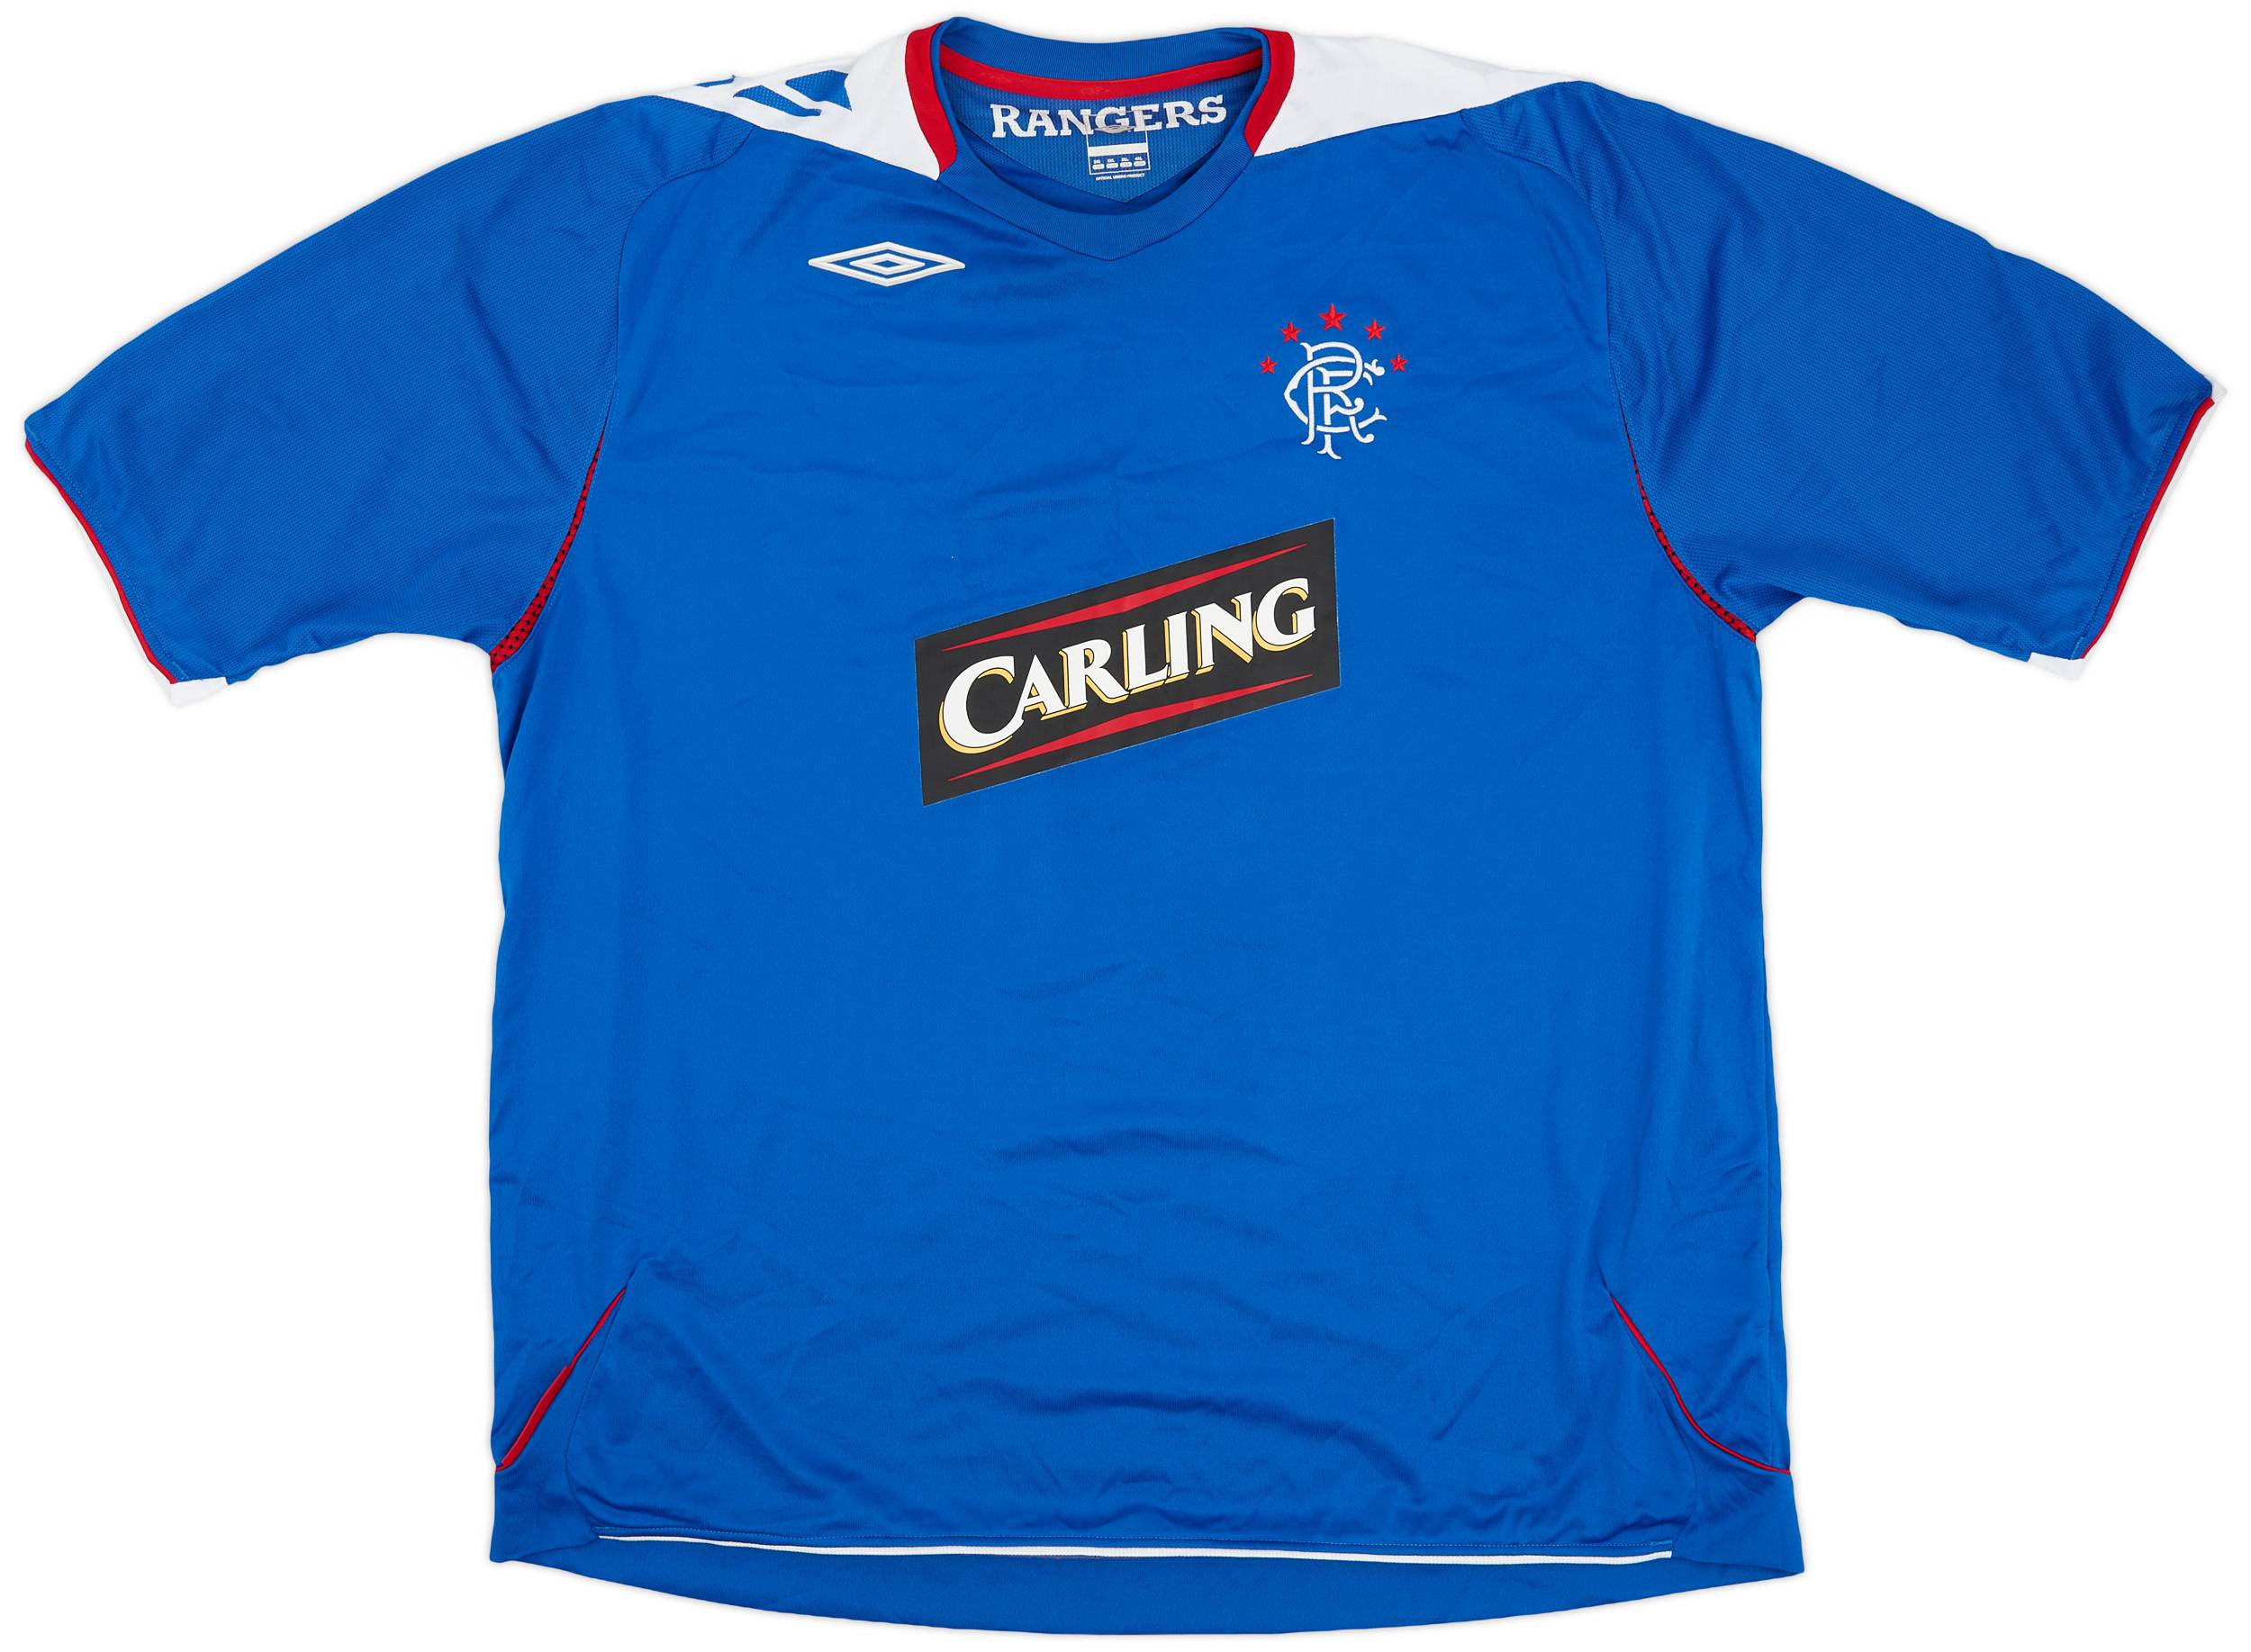 2006-07 Rangers Home Shirt - 8/10 - (3XL)